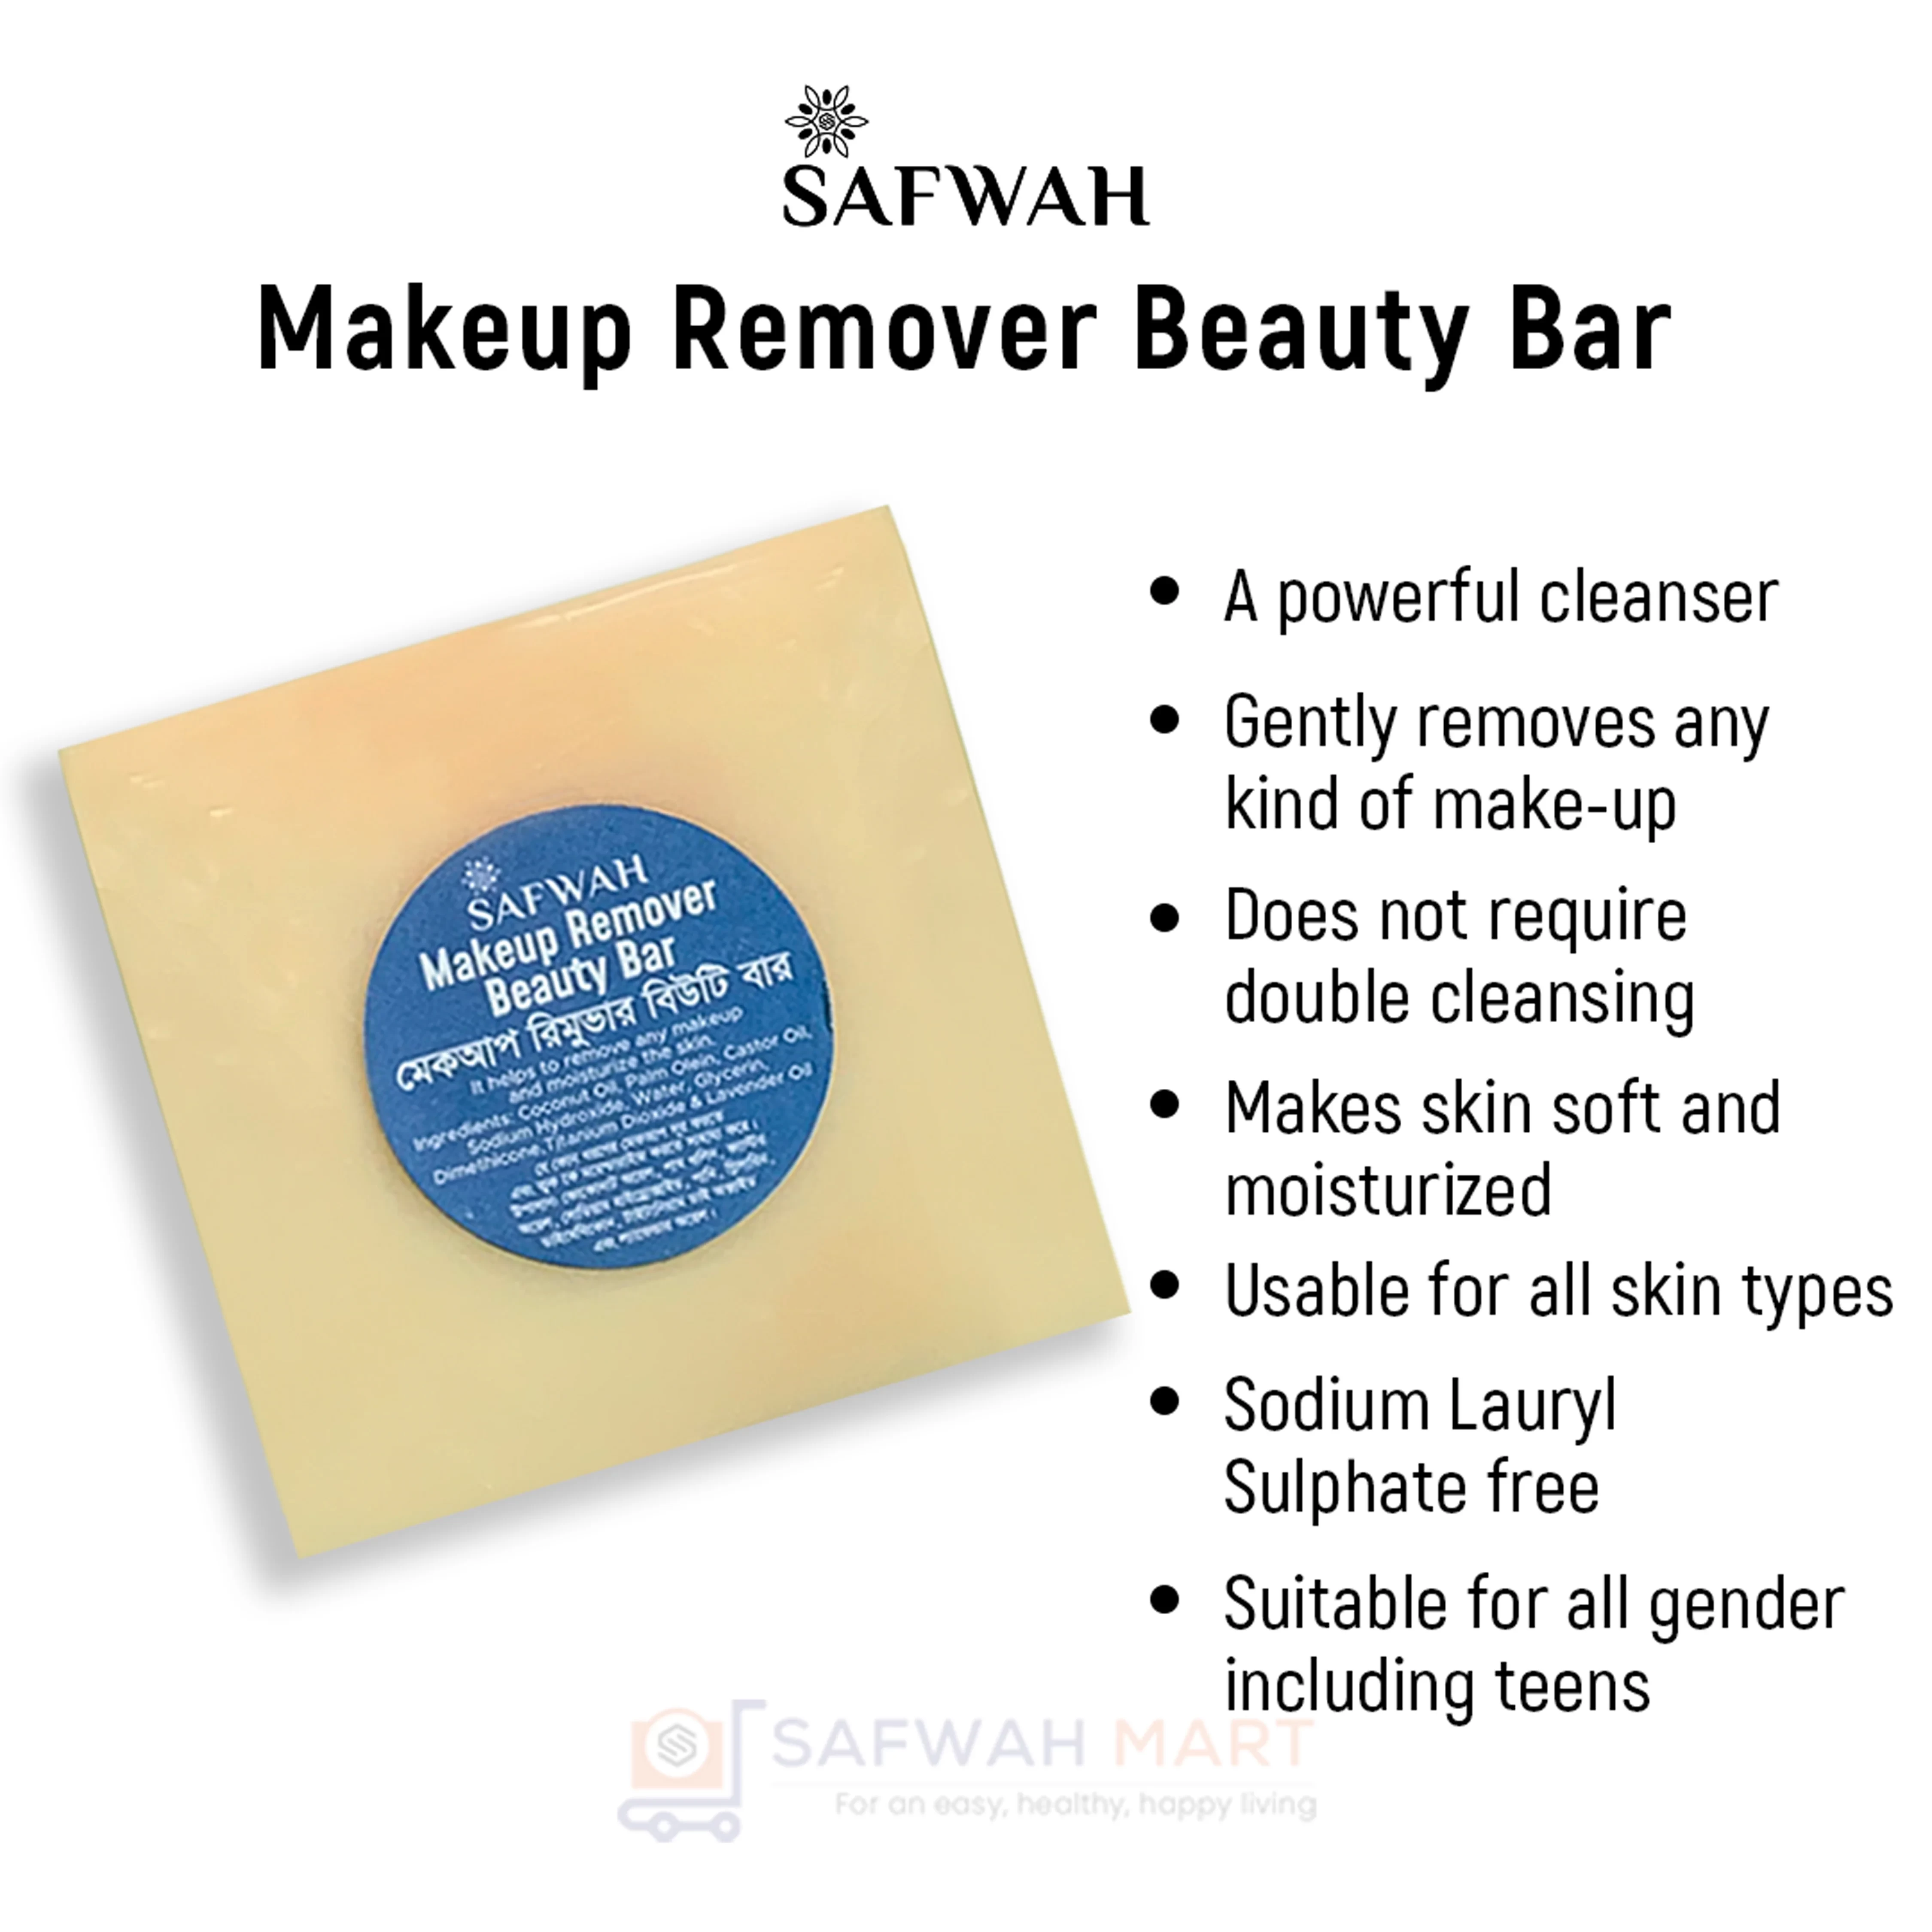 Safwah Makeup Remover Beauty Bar